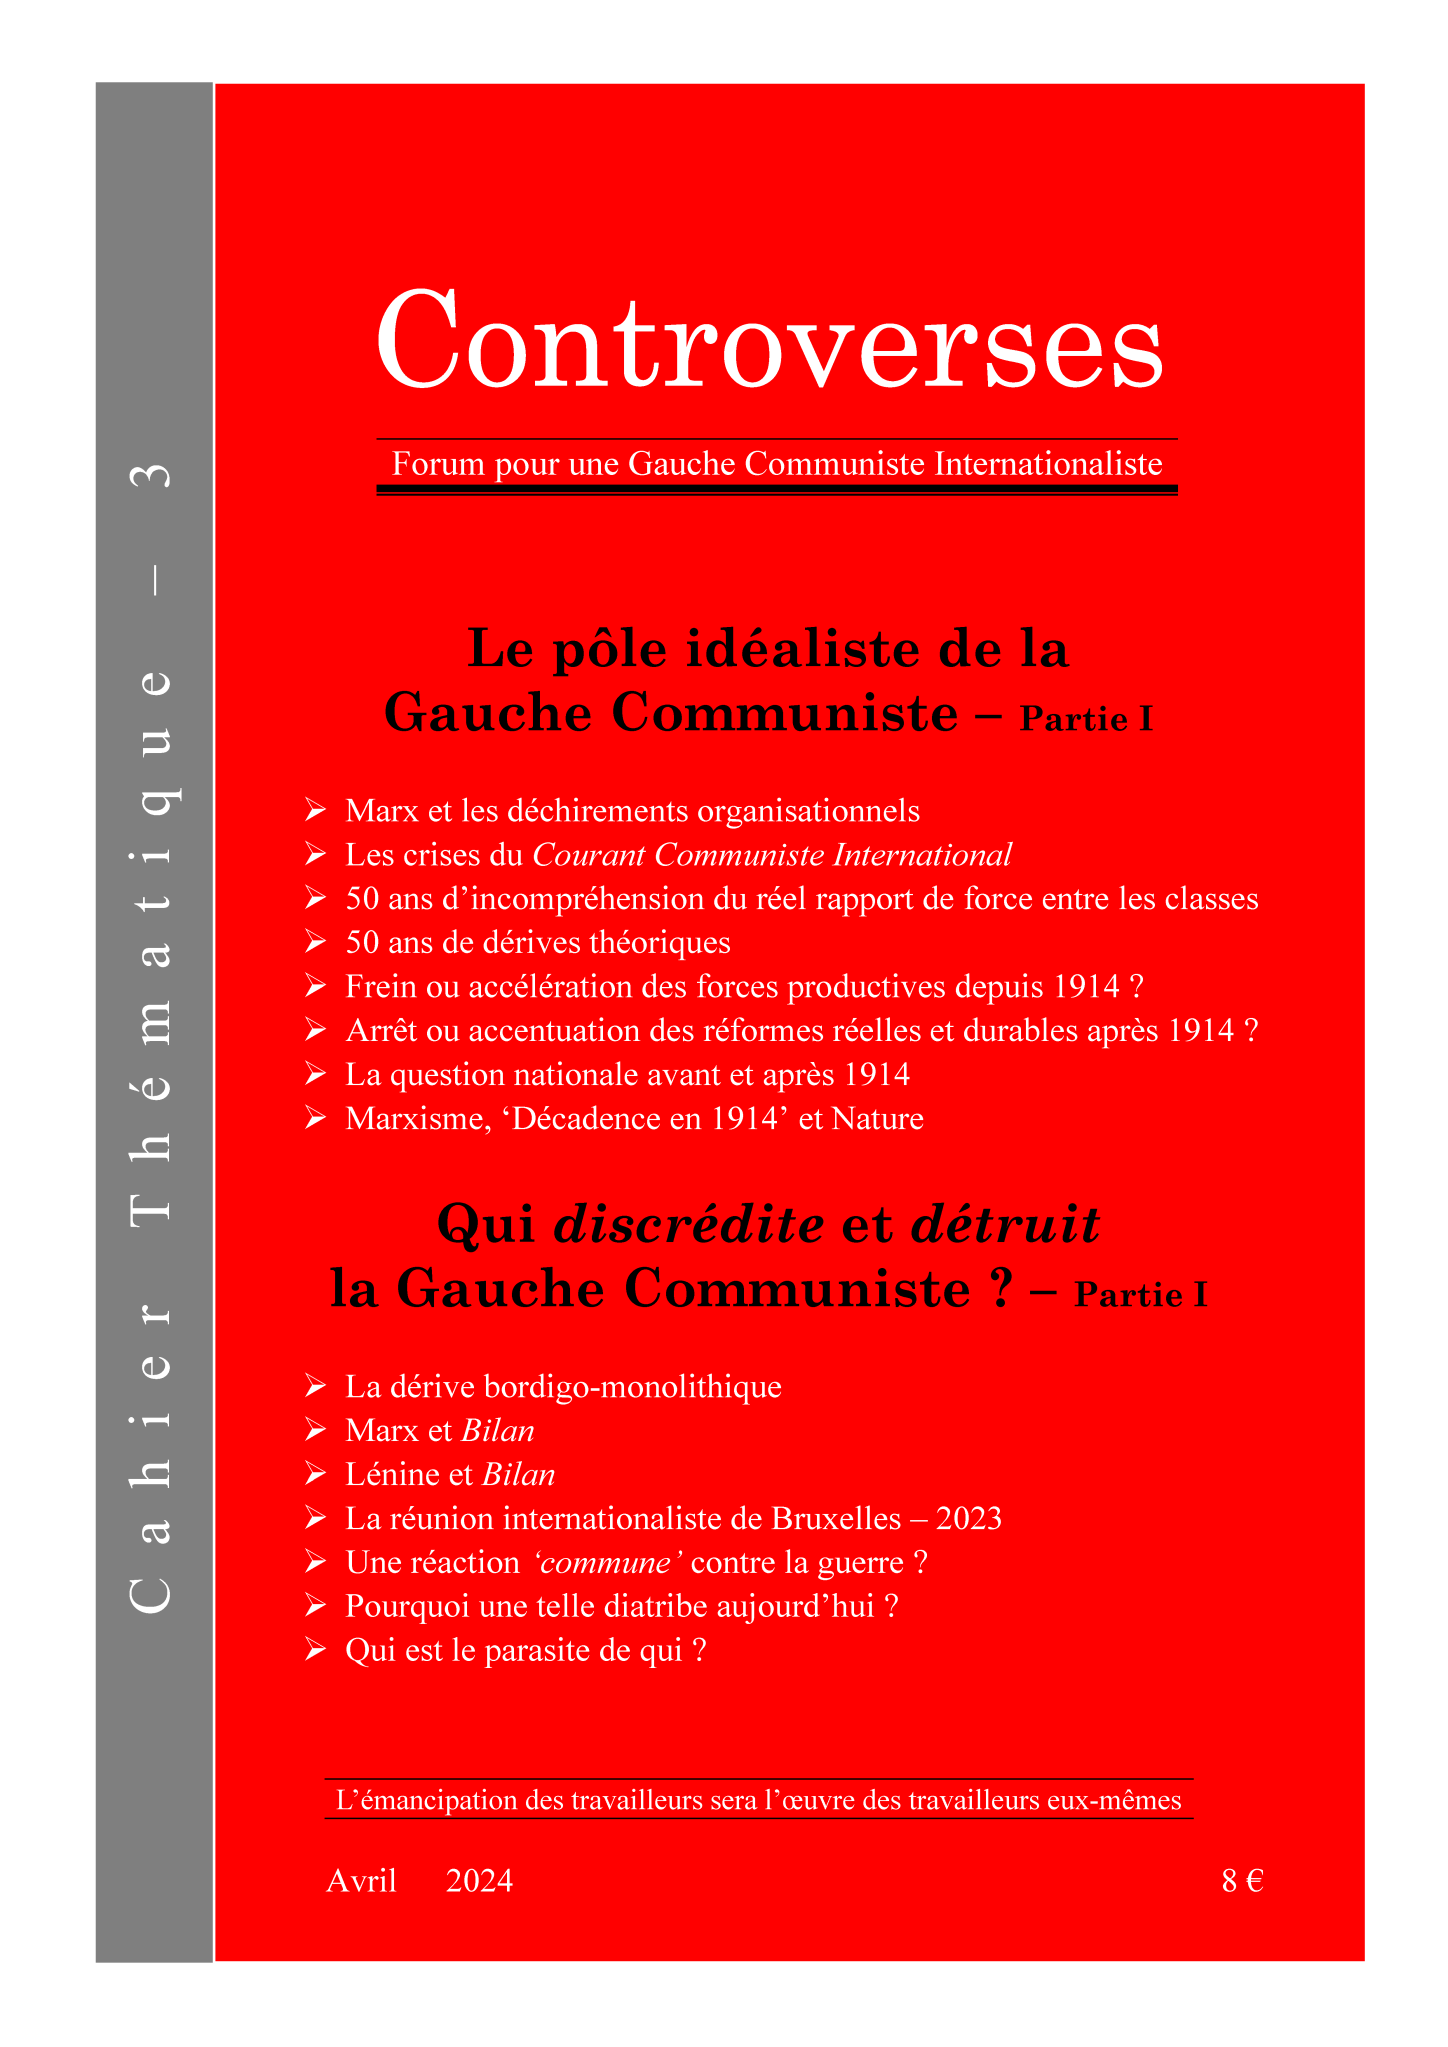 Controverses. Cuaderno Temático nº 3. Comportamientos. Valoración crítica (Español-Français) Ct_3_-_cci_-_2024-04-06_-_couverture